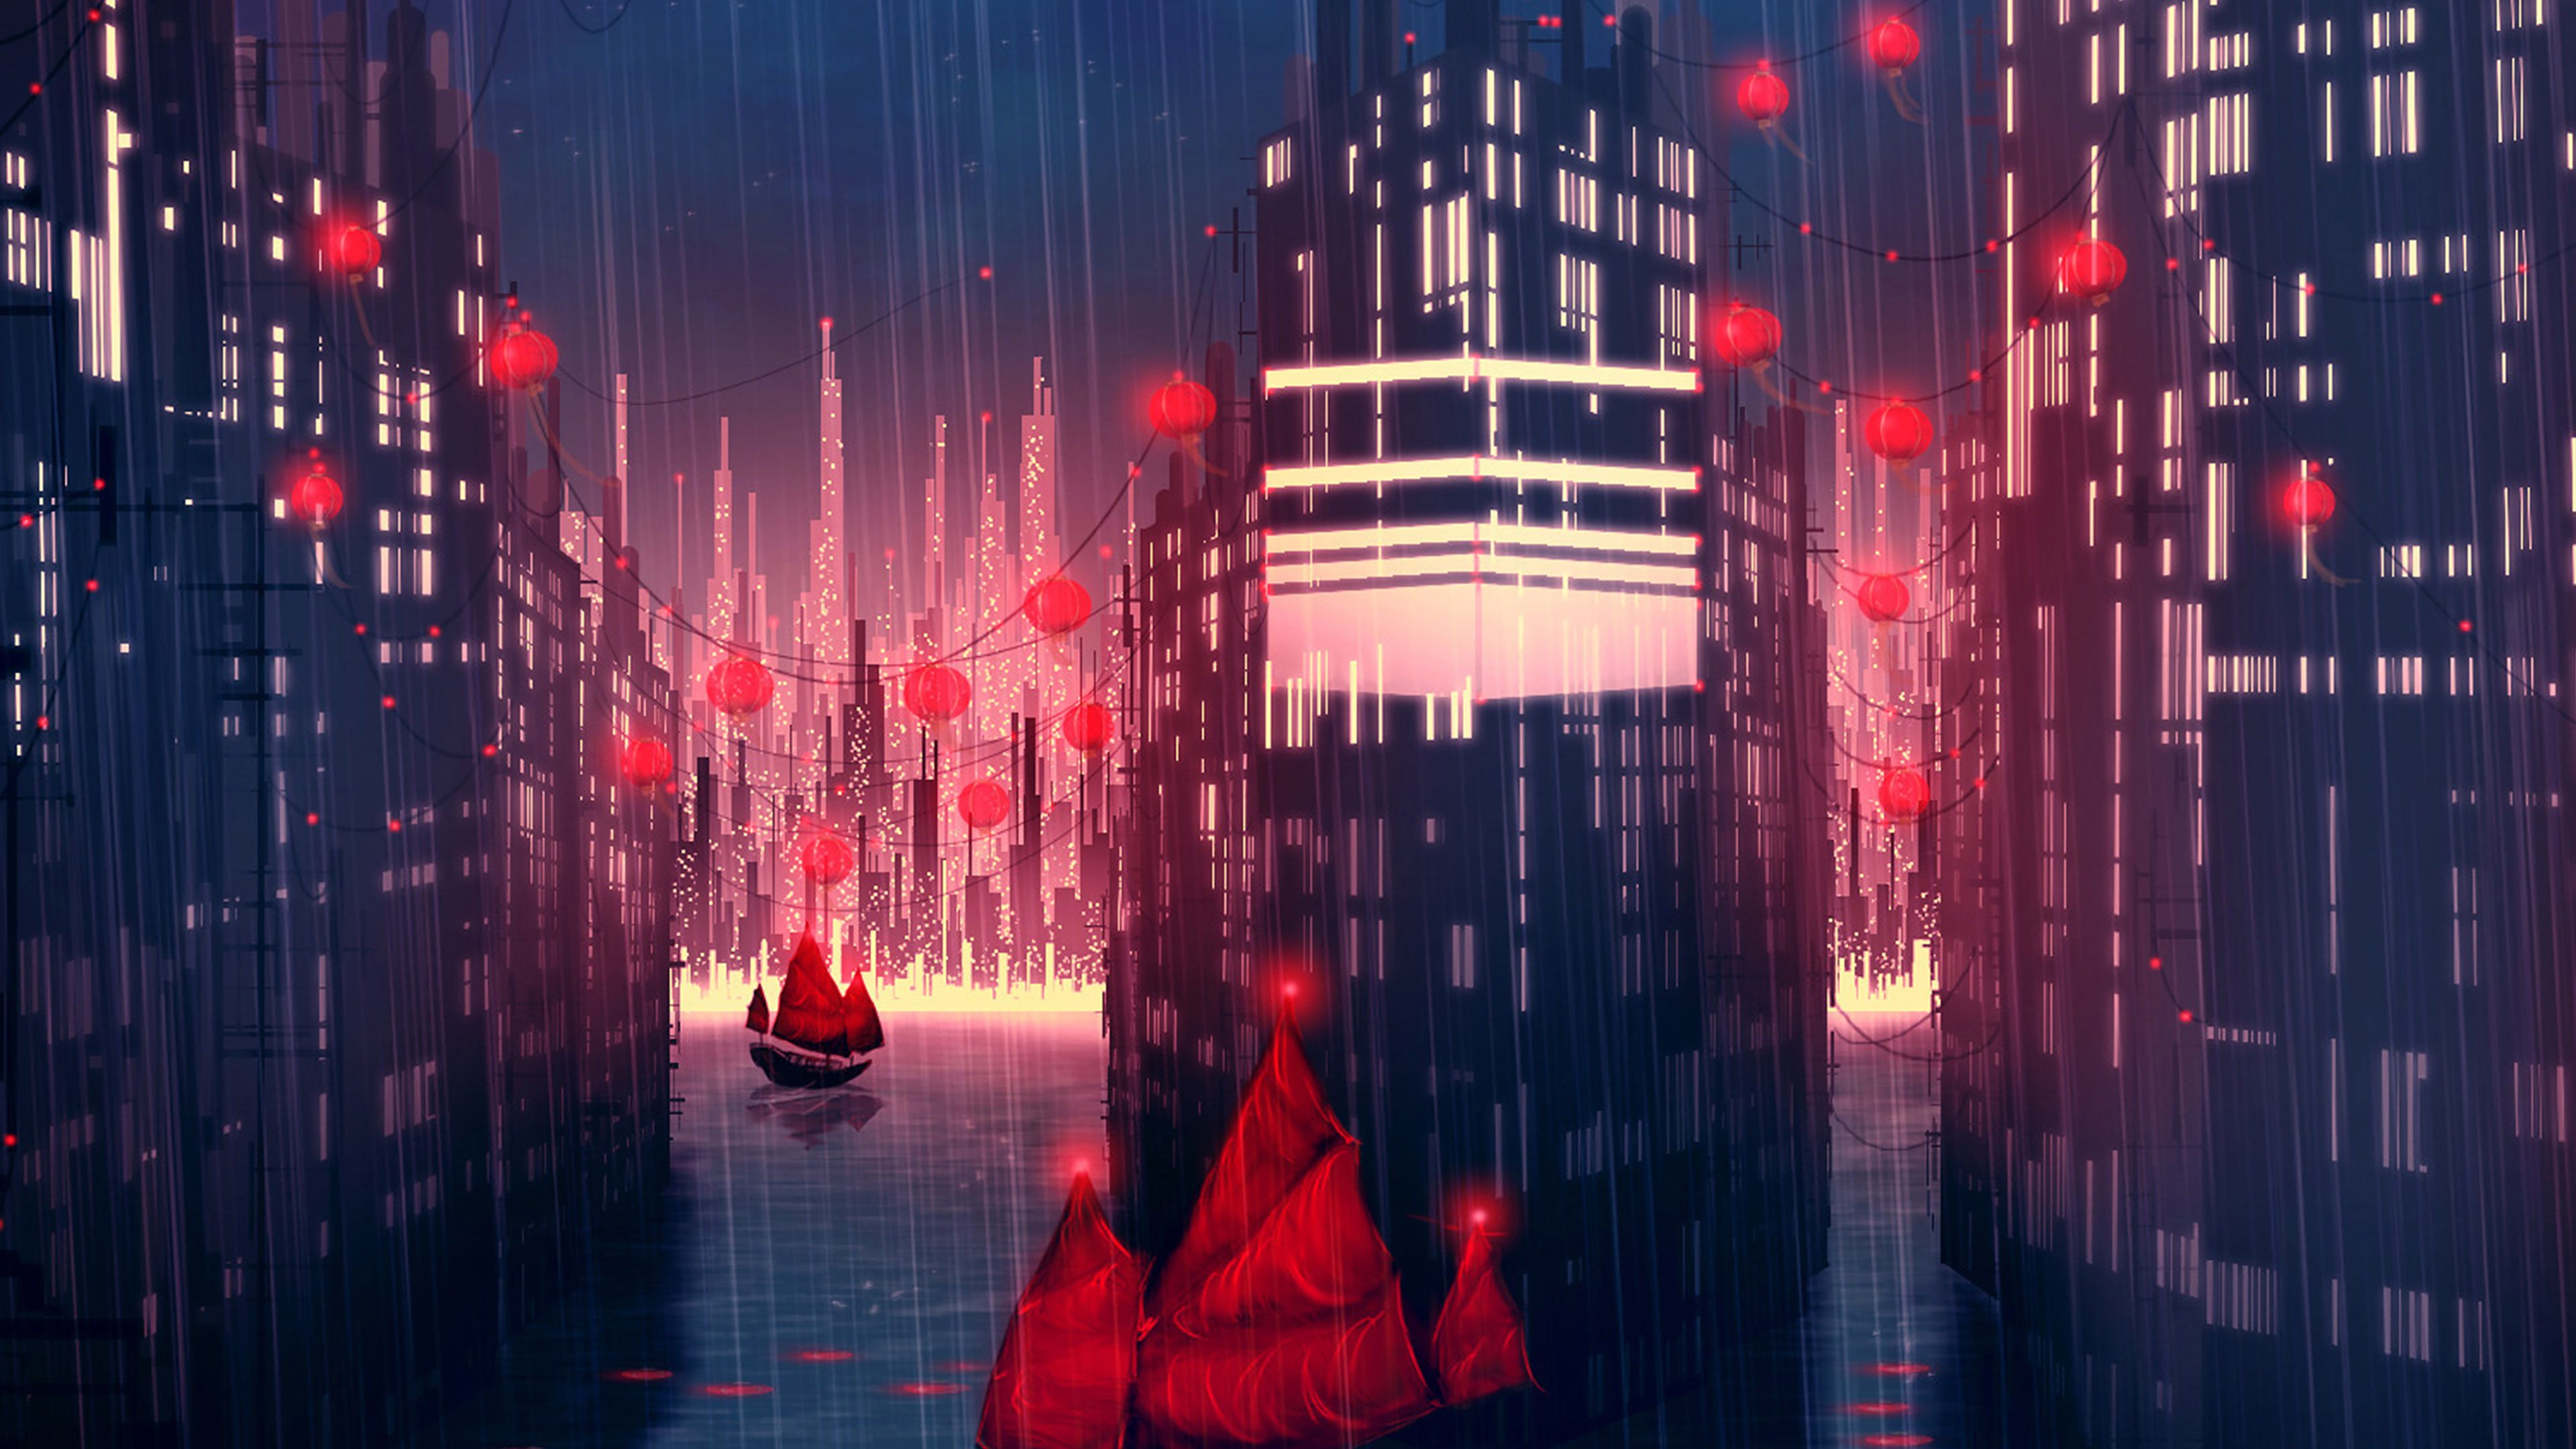 wallpaper for desktop, laptop. rainy anime city art illust